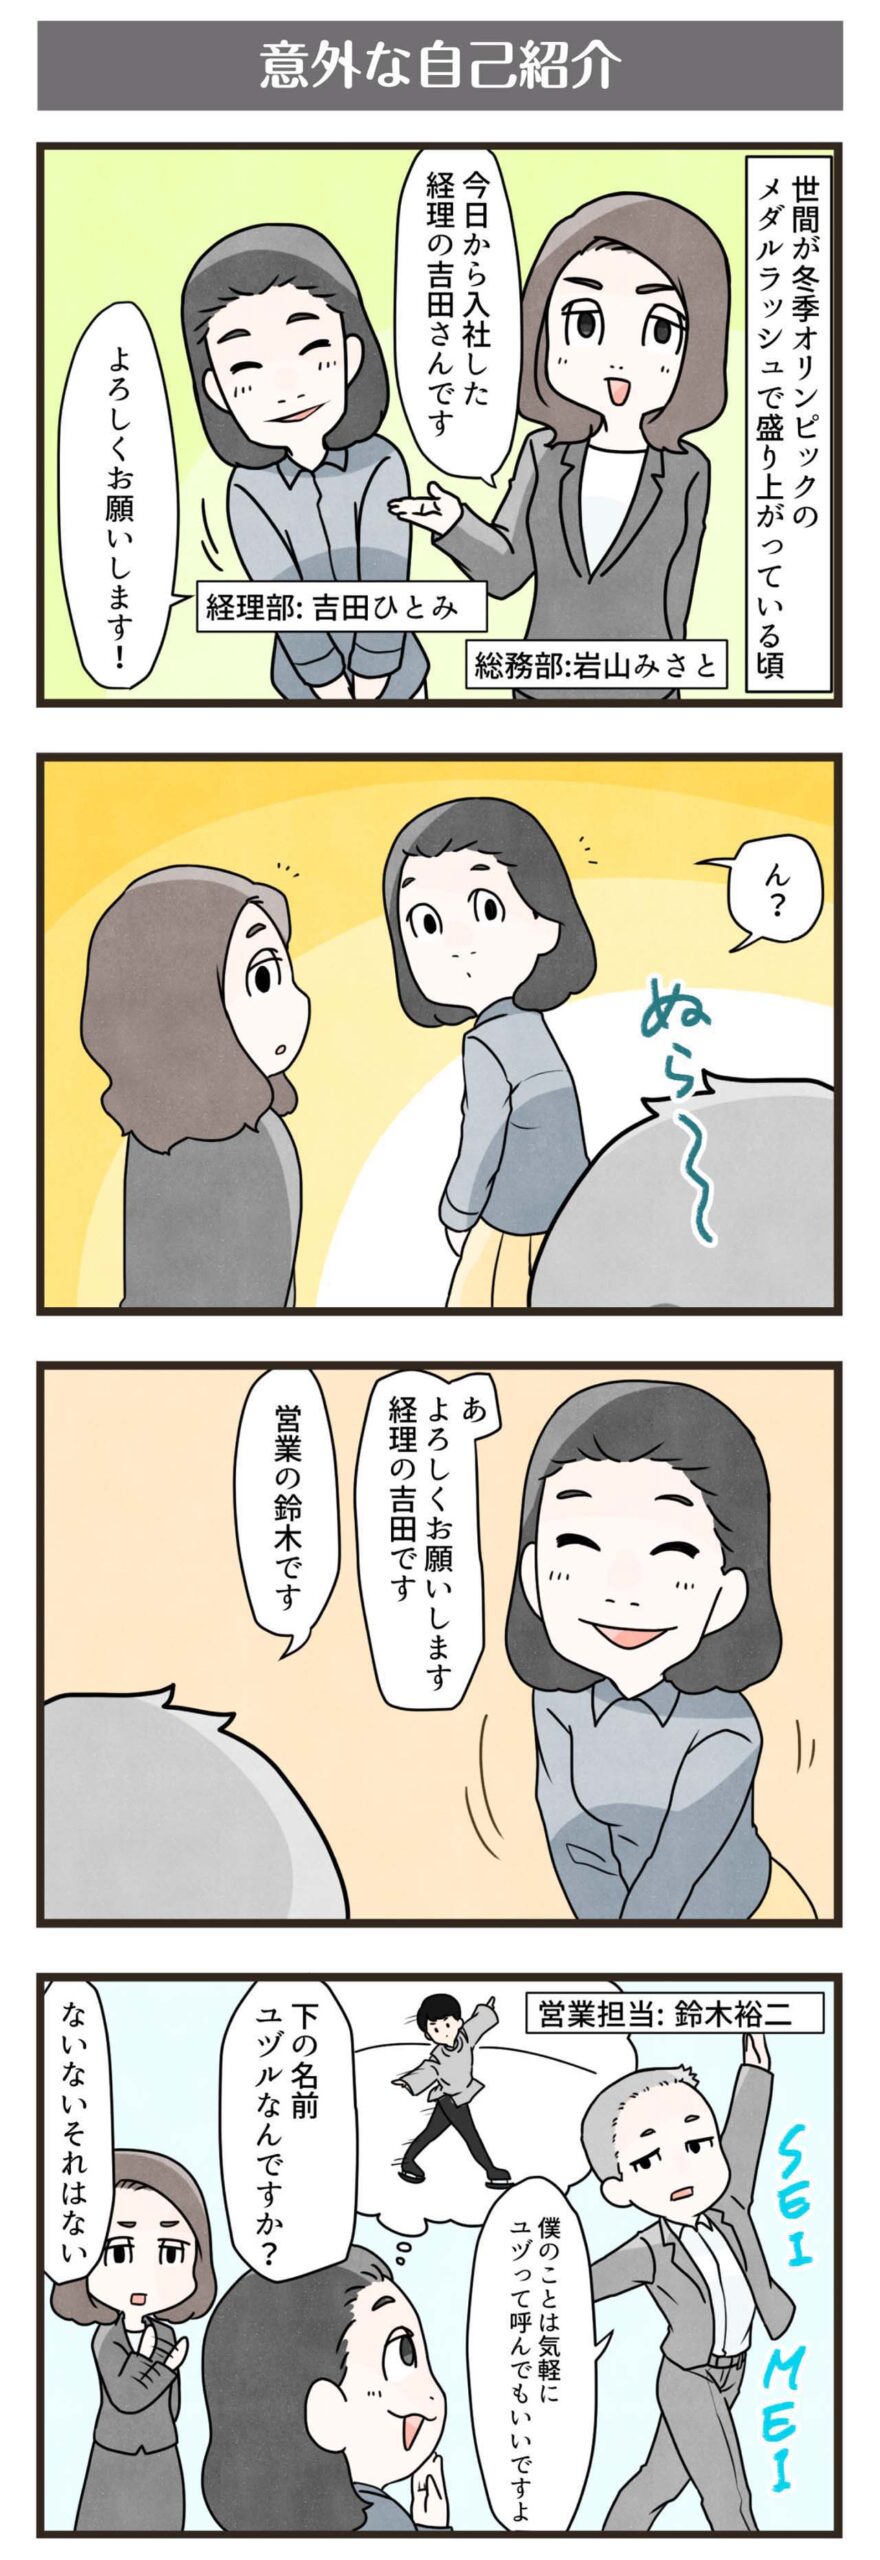 横浜スタイル4コマ漫画2018年3月分